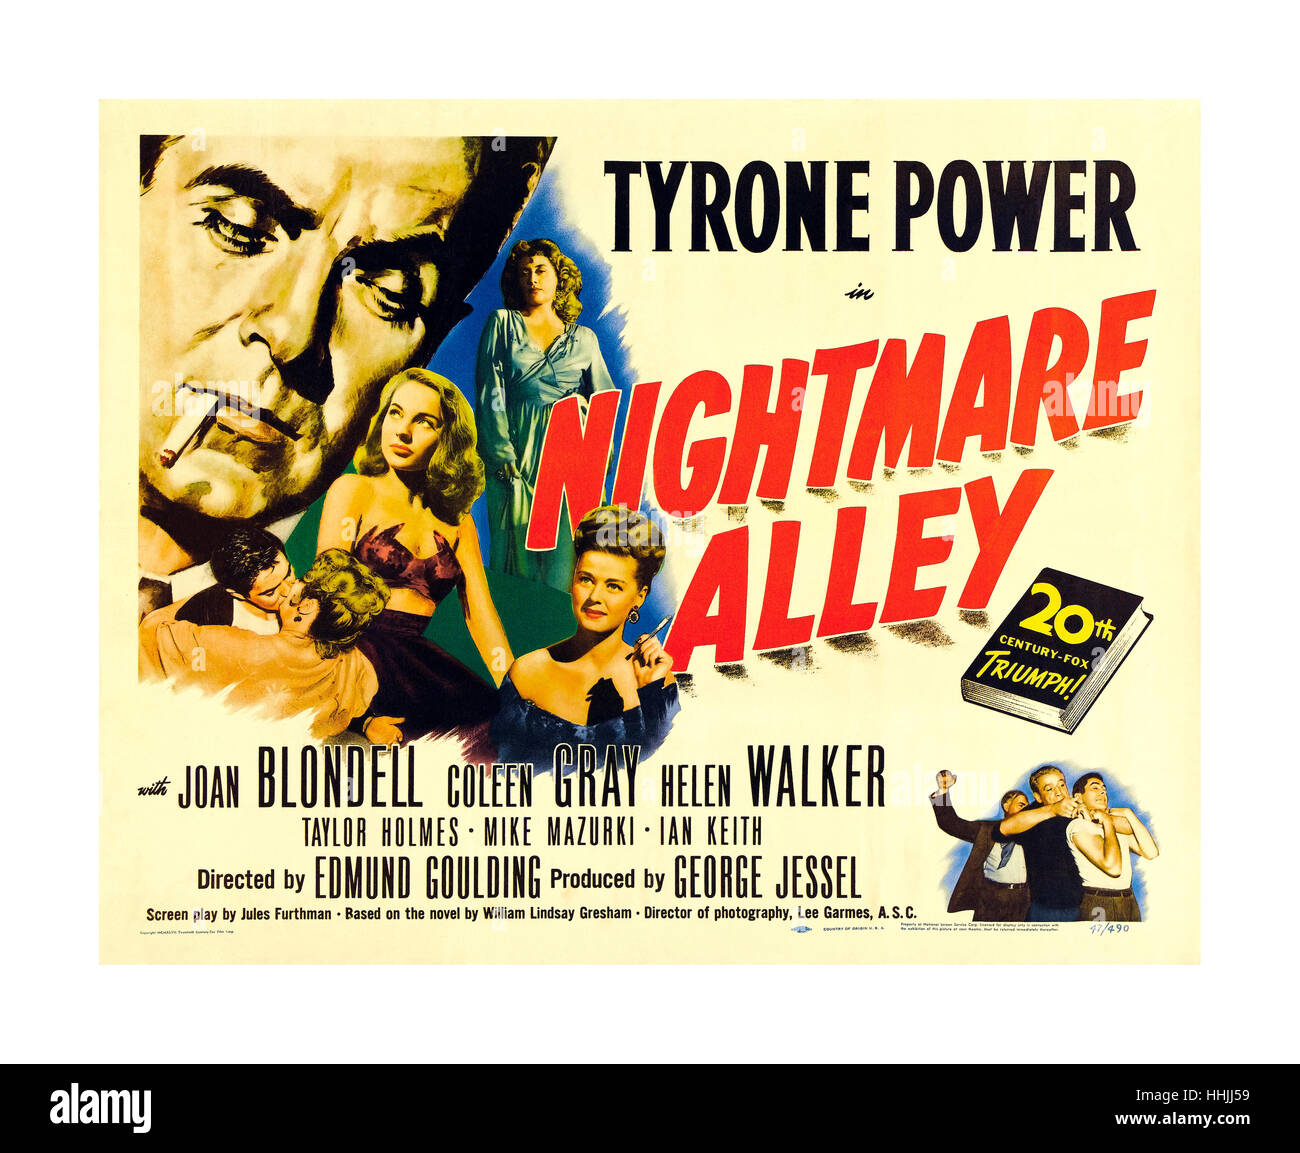 1940 TYRONE POWER JAHRGANG FILM POSTER NIGHTMARE ALLEY Nightmare Alley ist ein nach dem Krieg 1947 Film noir mit Tyrone Power, Joan Blondell, und von Edmund Goulding geleitet. Der Film basiert auf der 1946 gleichnamigen Roman, geschrieben von William Lindsay Gresham basiert. Stockfoto